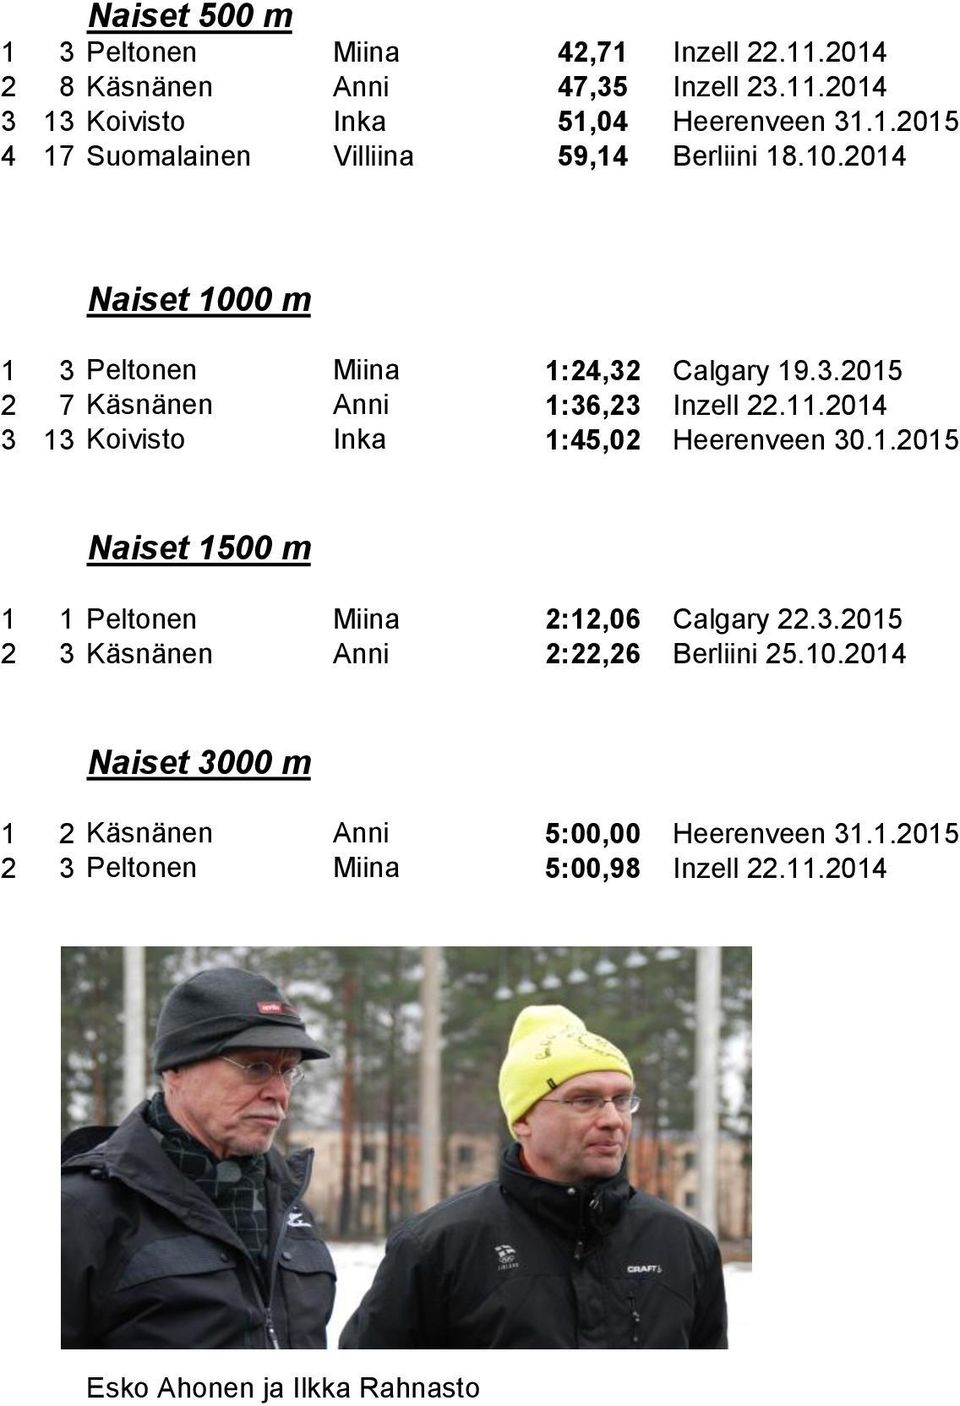 2014 3 13 Koivisto Inka 1:45,02 Heerenveen 30.1.2015 Naiset 1500 m 1 1 Peltonen Miina 2:12,06 Calgary 22.3.2015 2 3 Käsnänen Anni 2:22,26 Berliini 25.